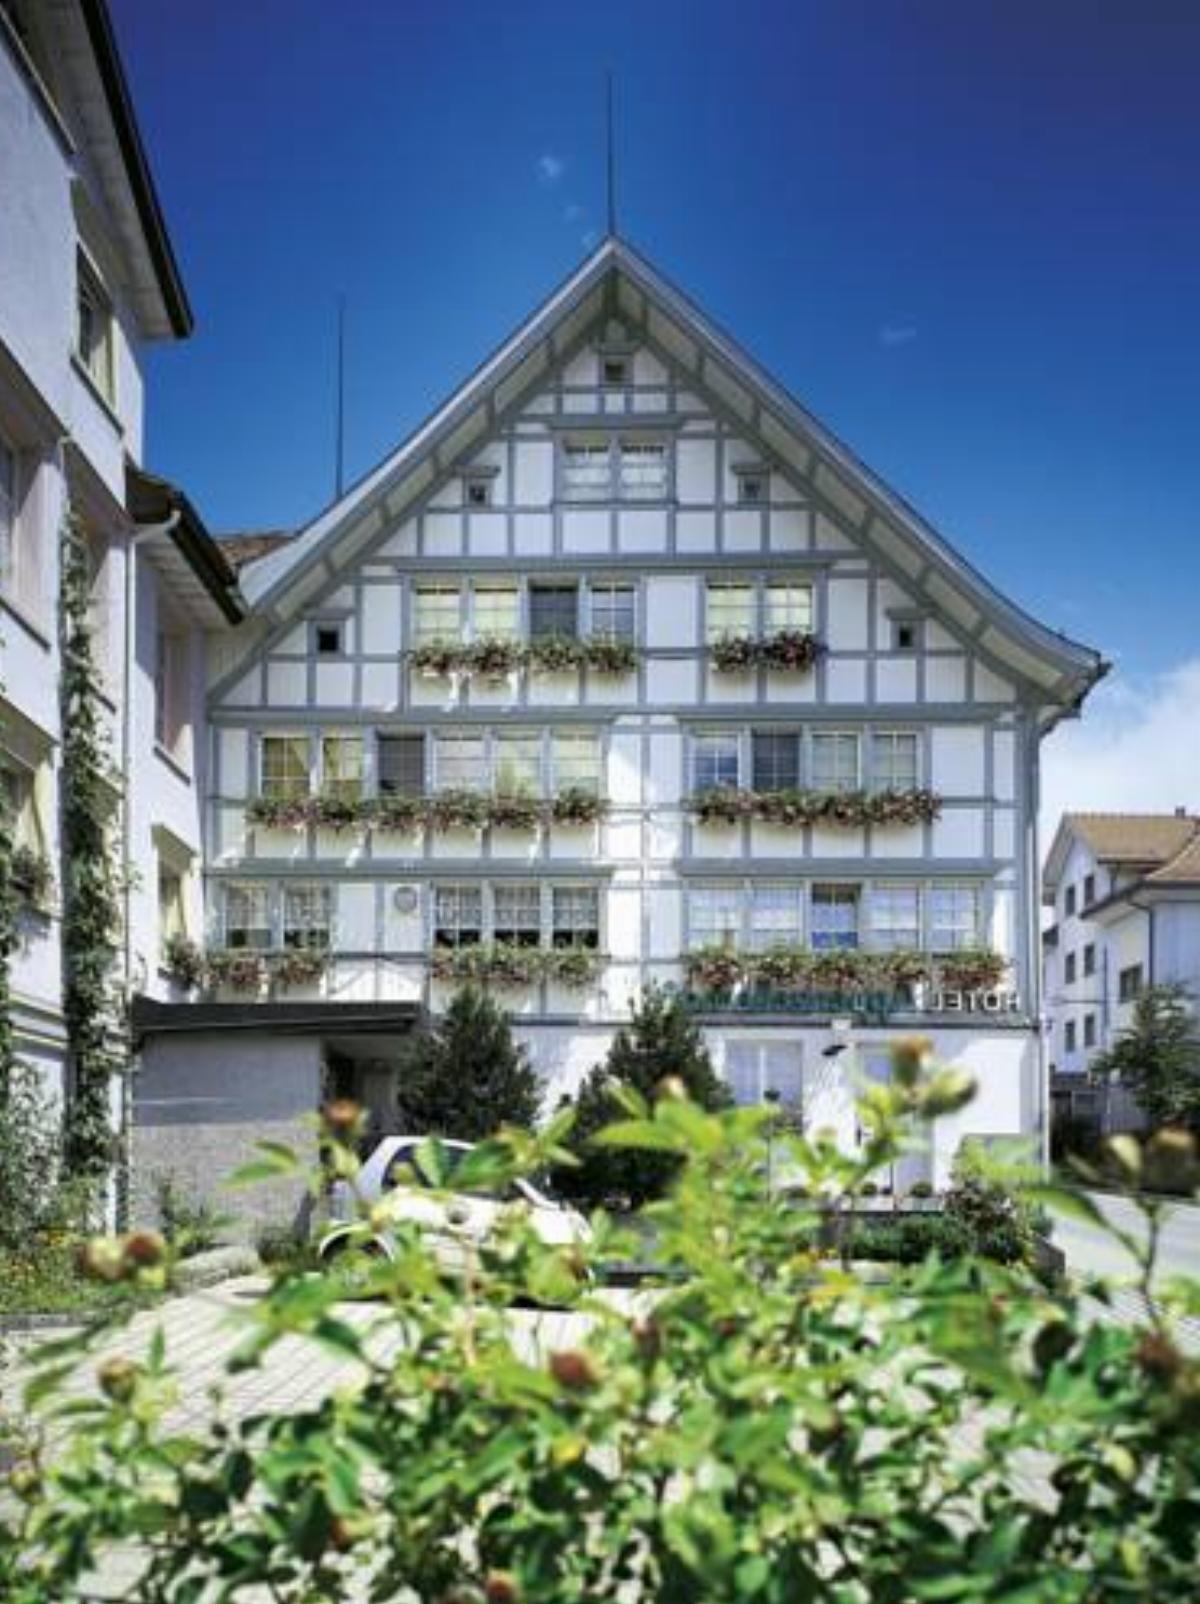 Idyllhotel Appenzellerhof Hotel Speicher Switzerland